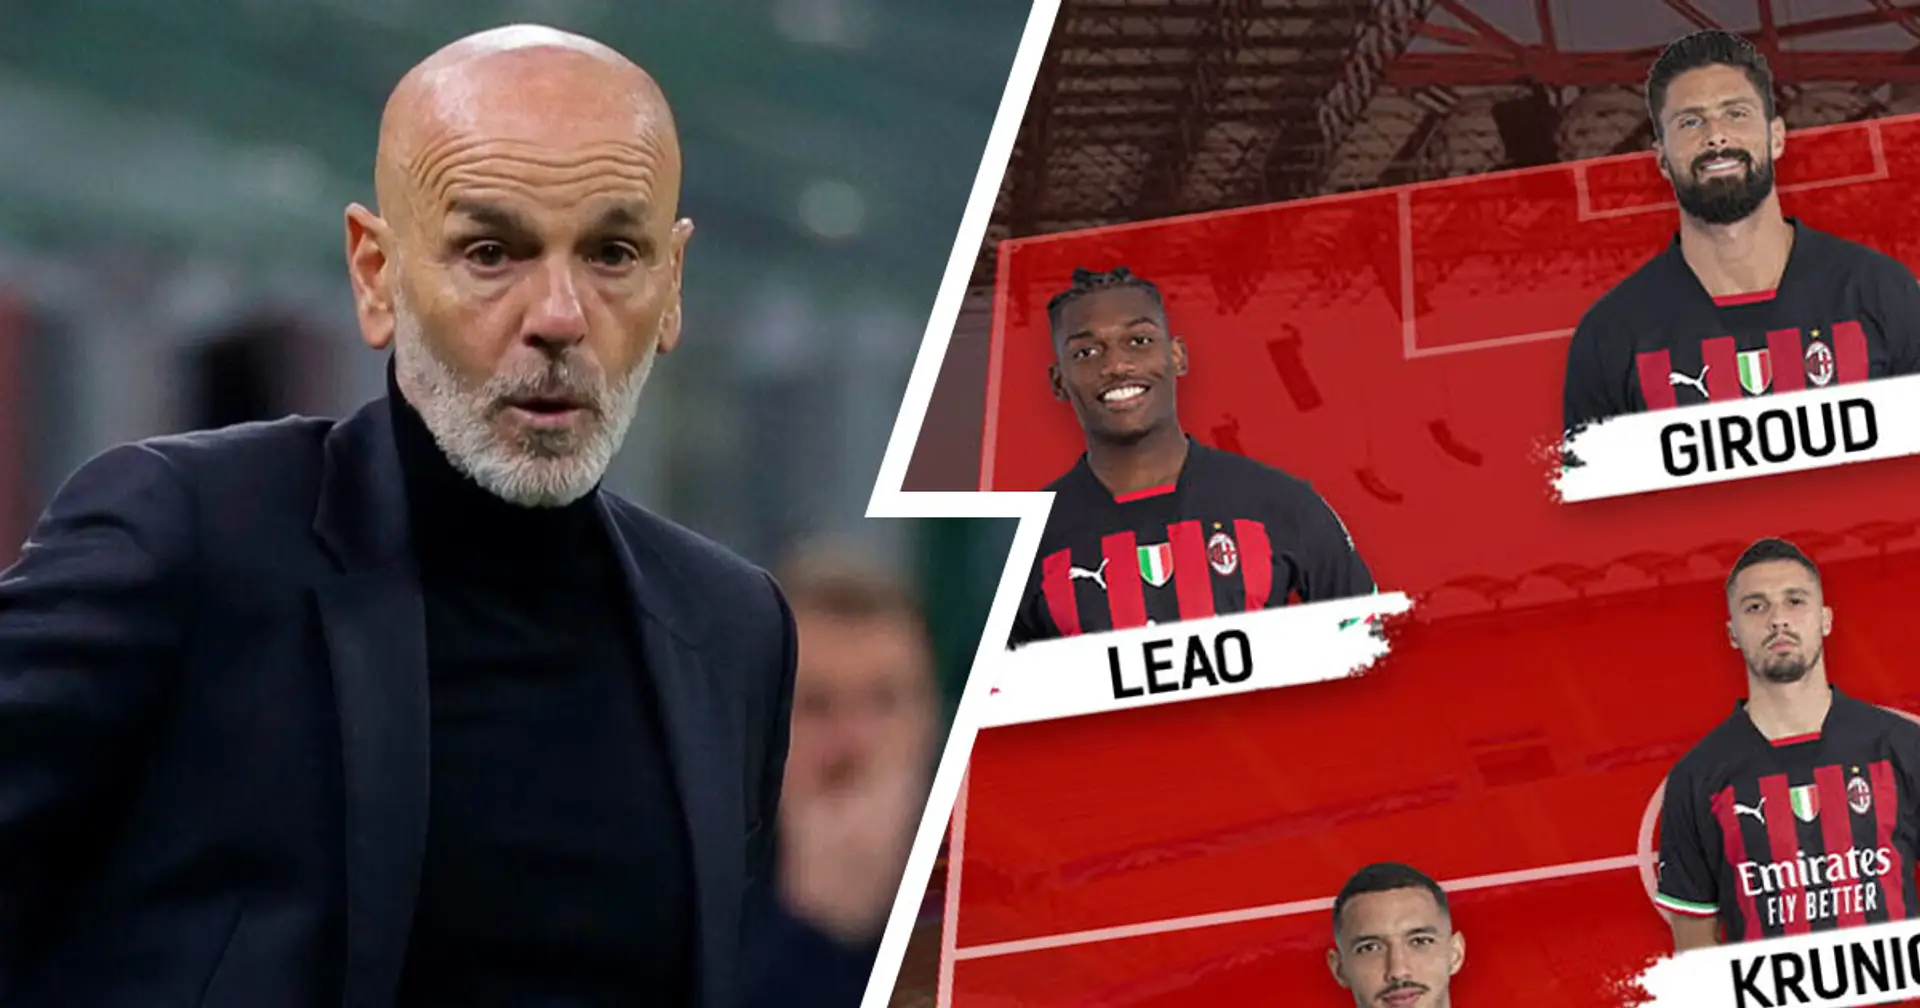 2 dubbi da sciogliere per Pioli, tornano Leao e Giroud: Milan vs Napoli, probabili formazioni e ultime notizie